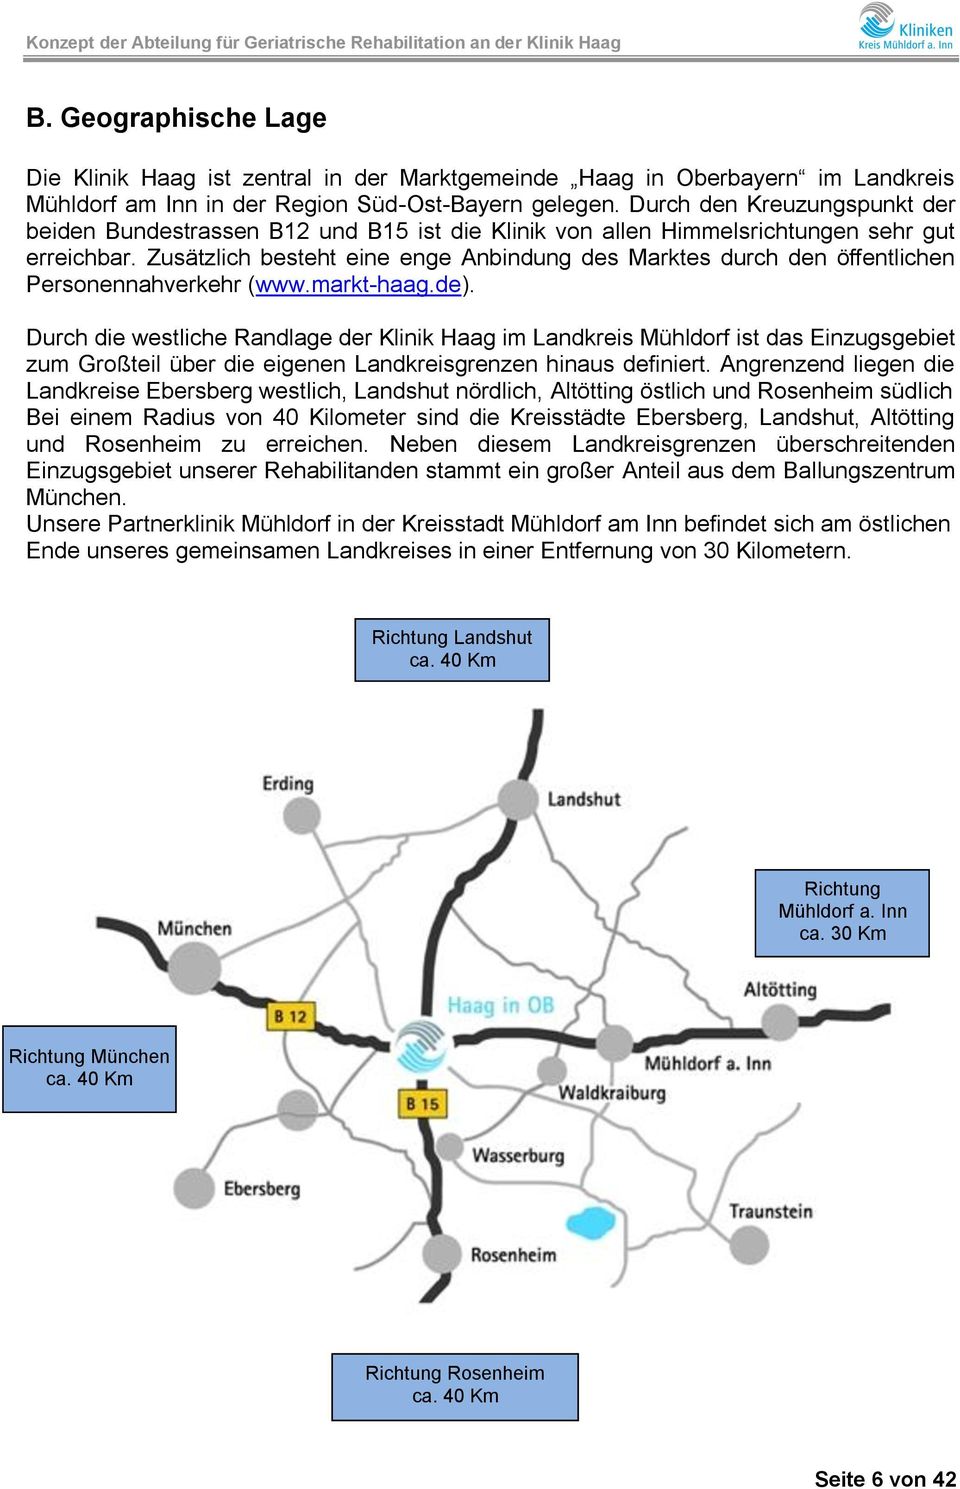 Zusätzlich besteht eine enge Anbindung des Marktes durch den öffentlichen Personennahverkehr (www.markt-haag.de).